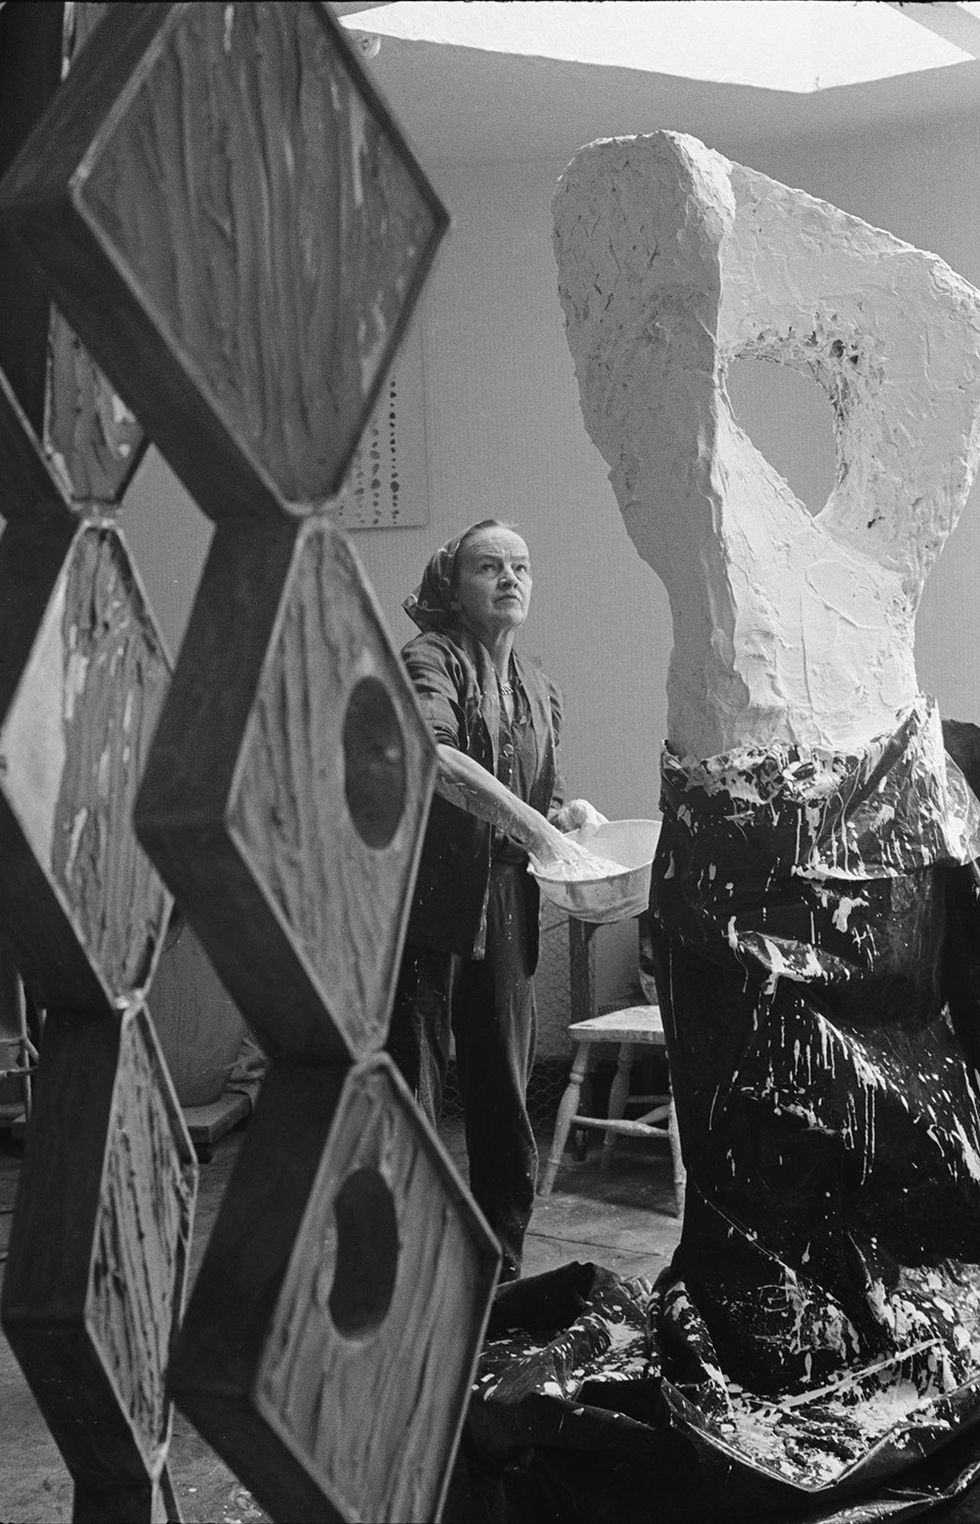 Hepworth in her studio (1964)